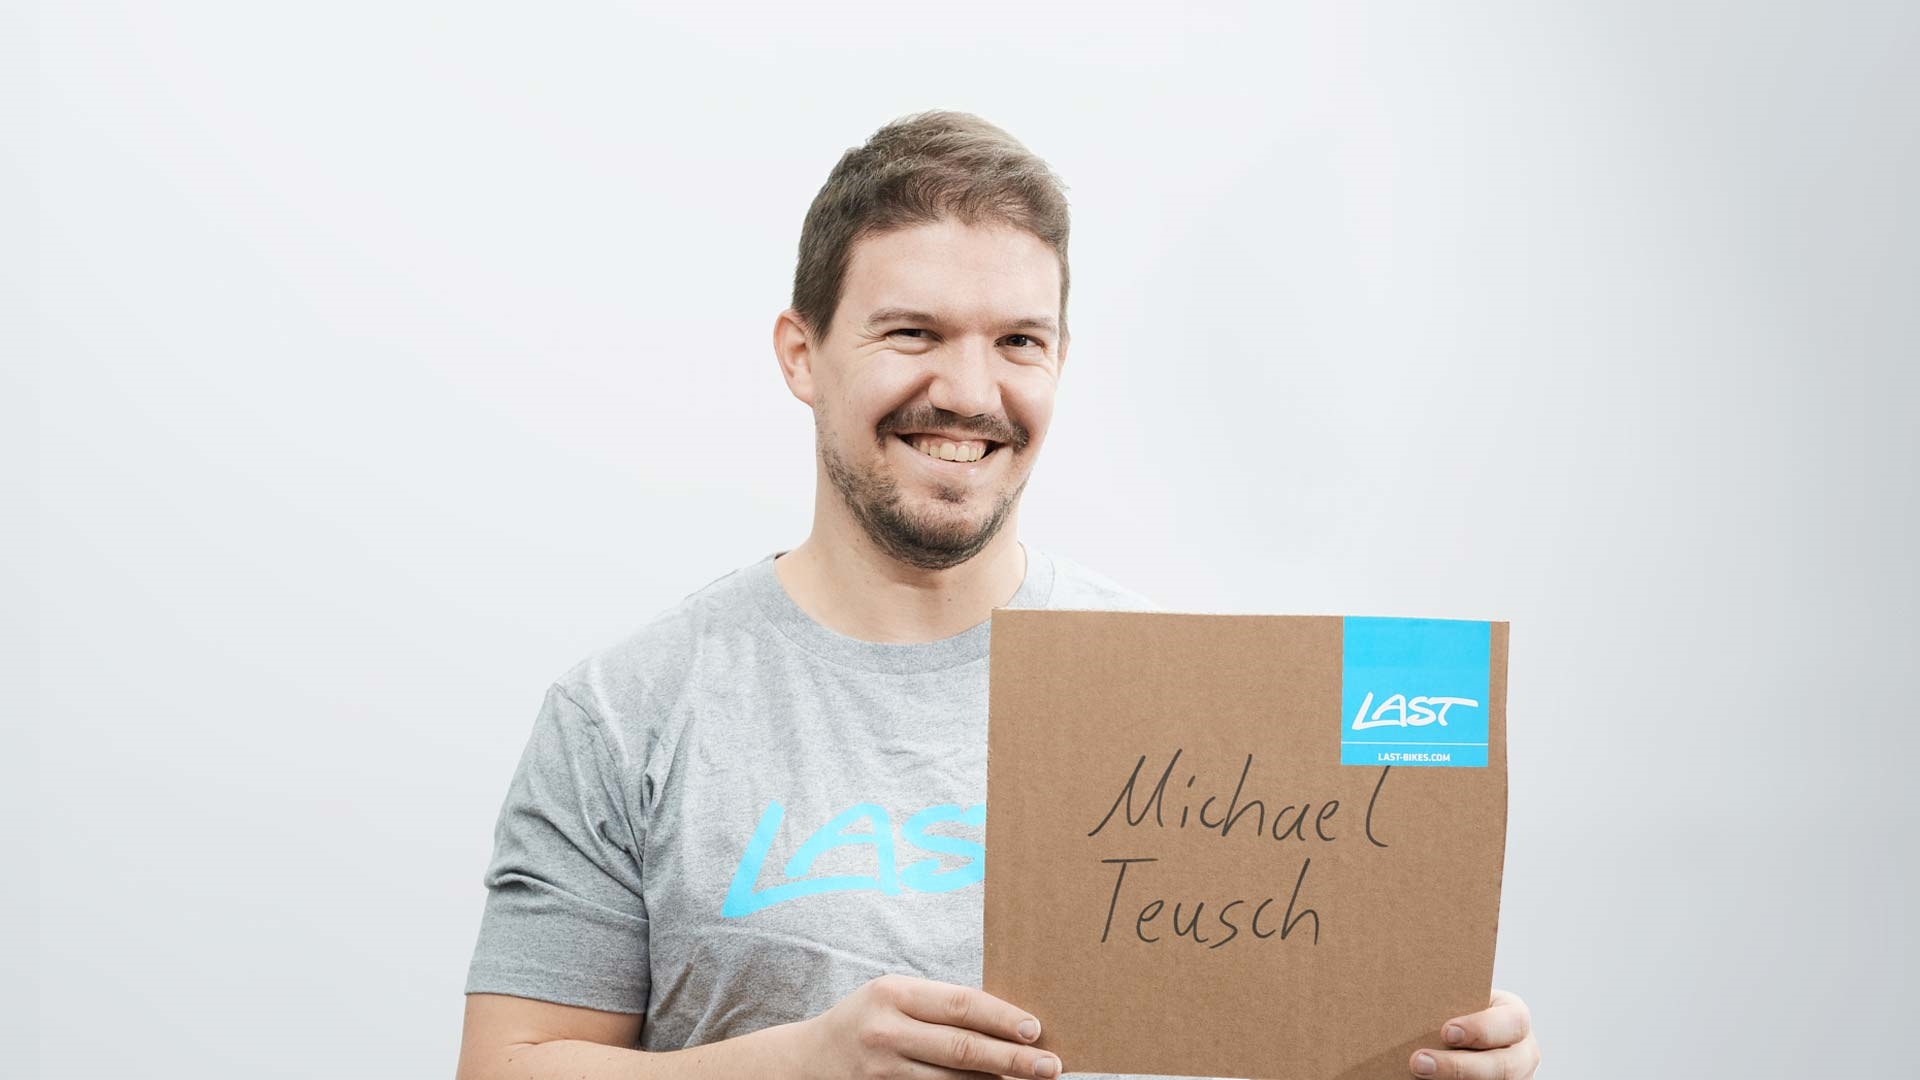 Michael Teusch